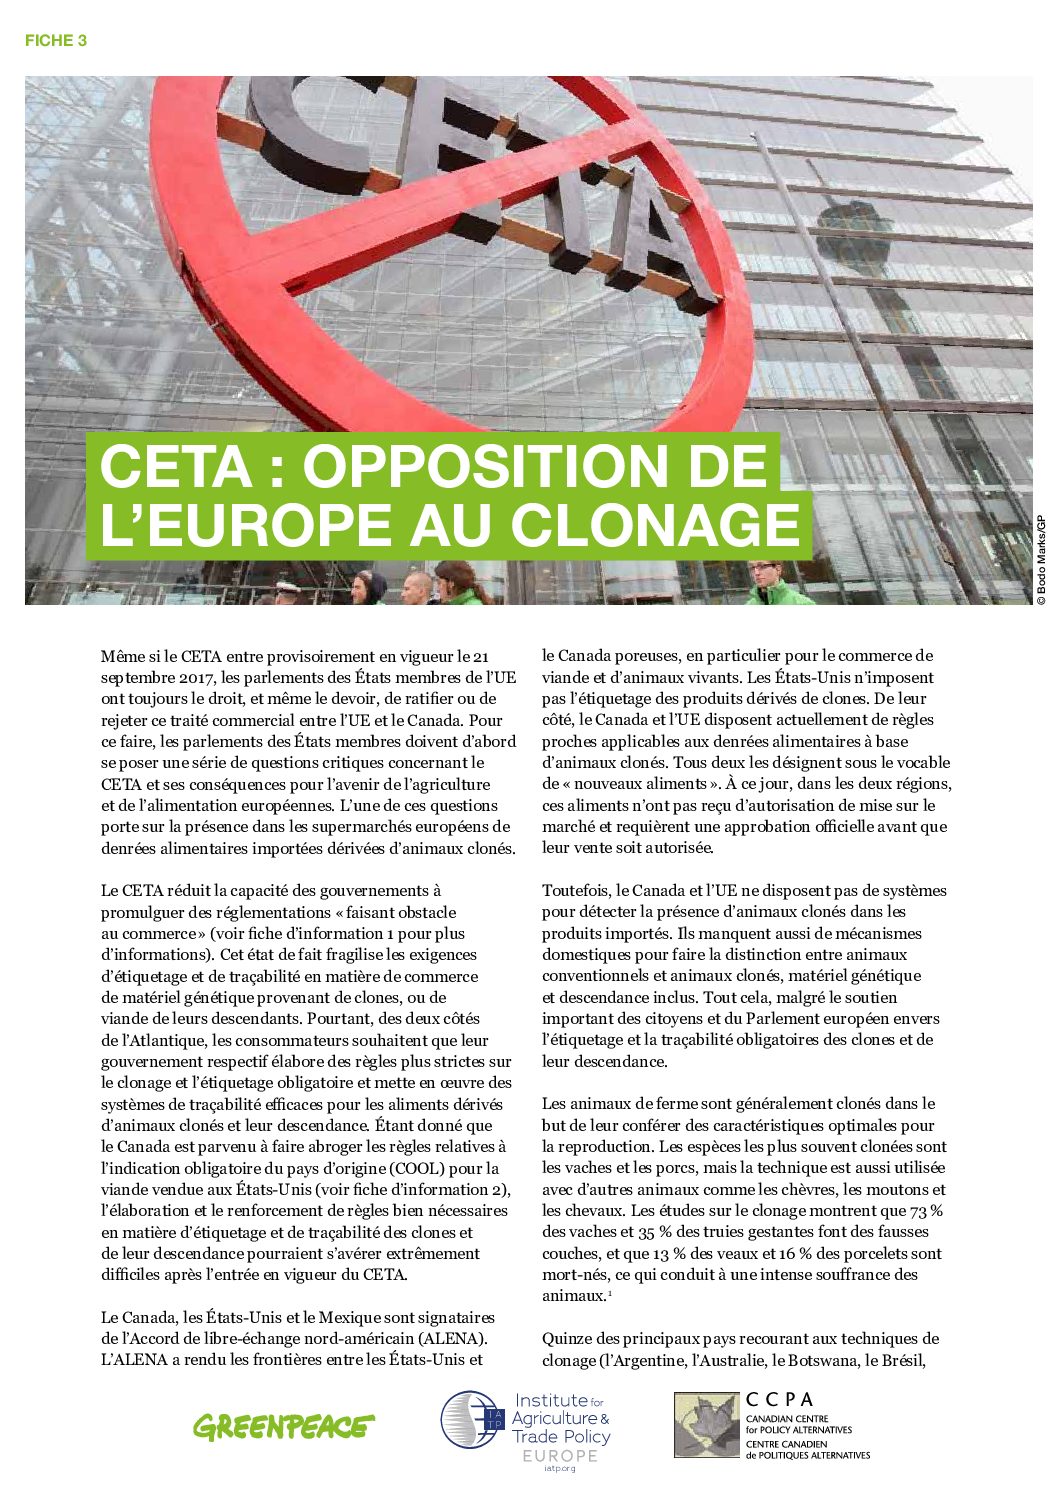 CETA : un accord incompatible avec le climat et la sécurité alimentaire